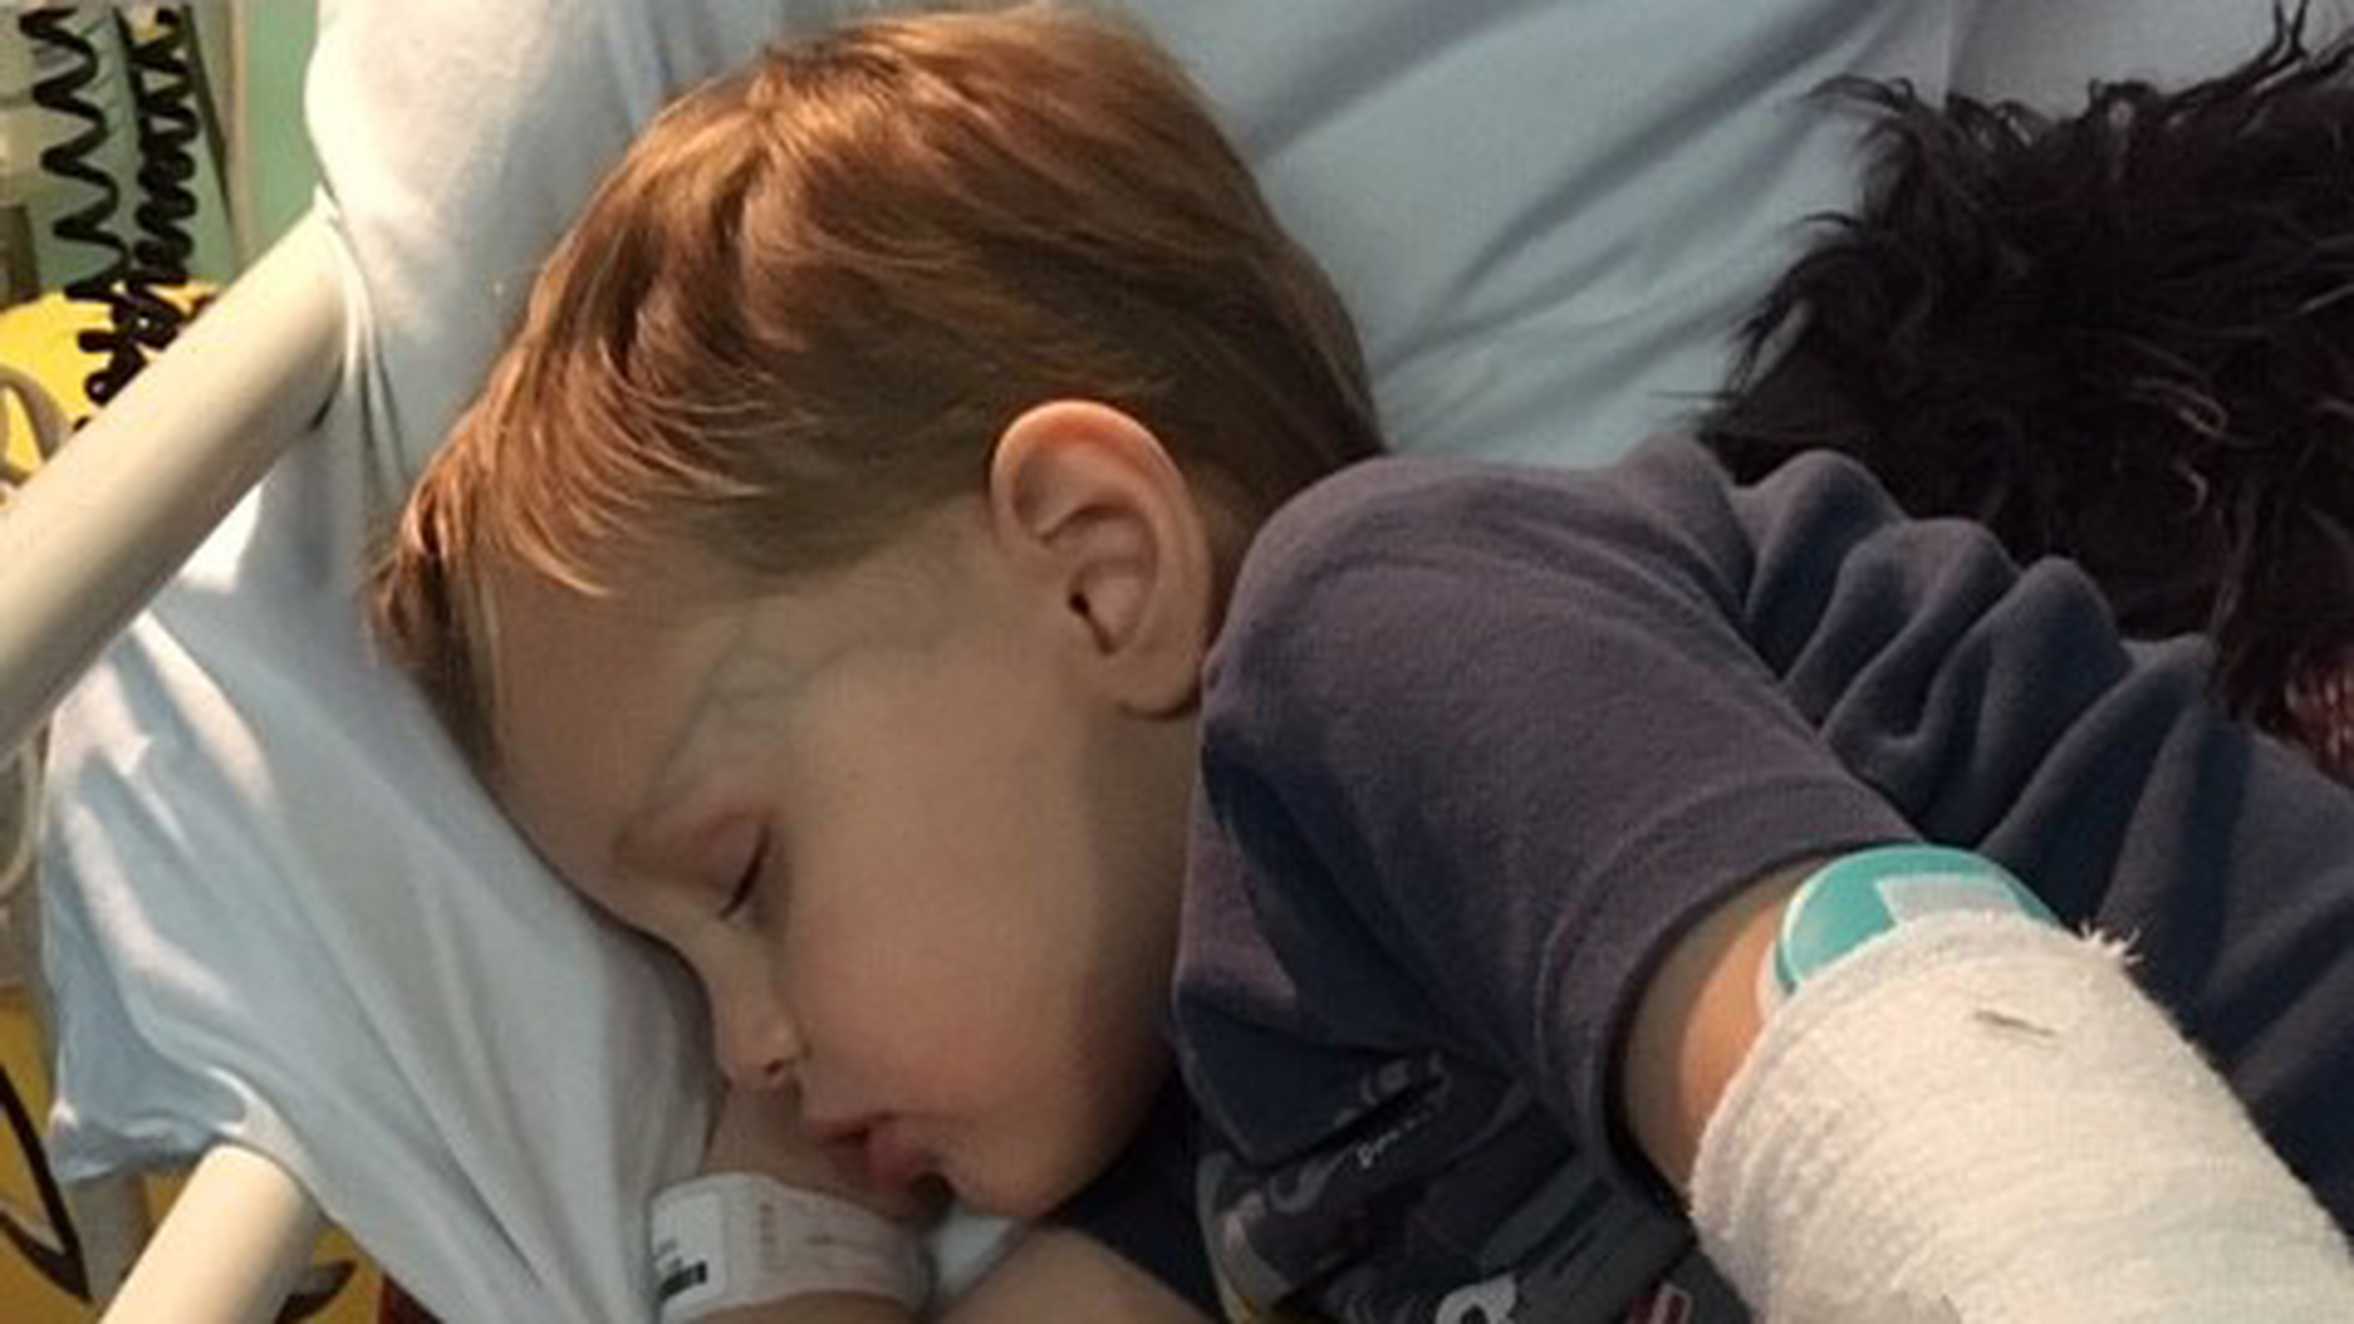 Finn asleep in his hospital bed